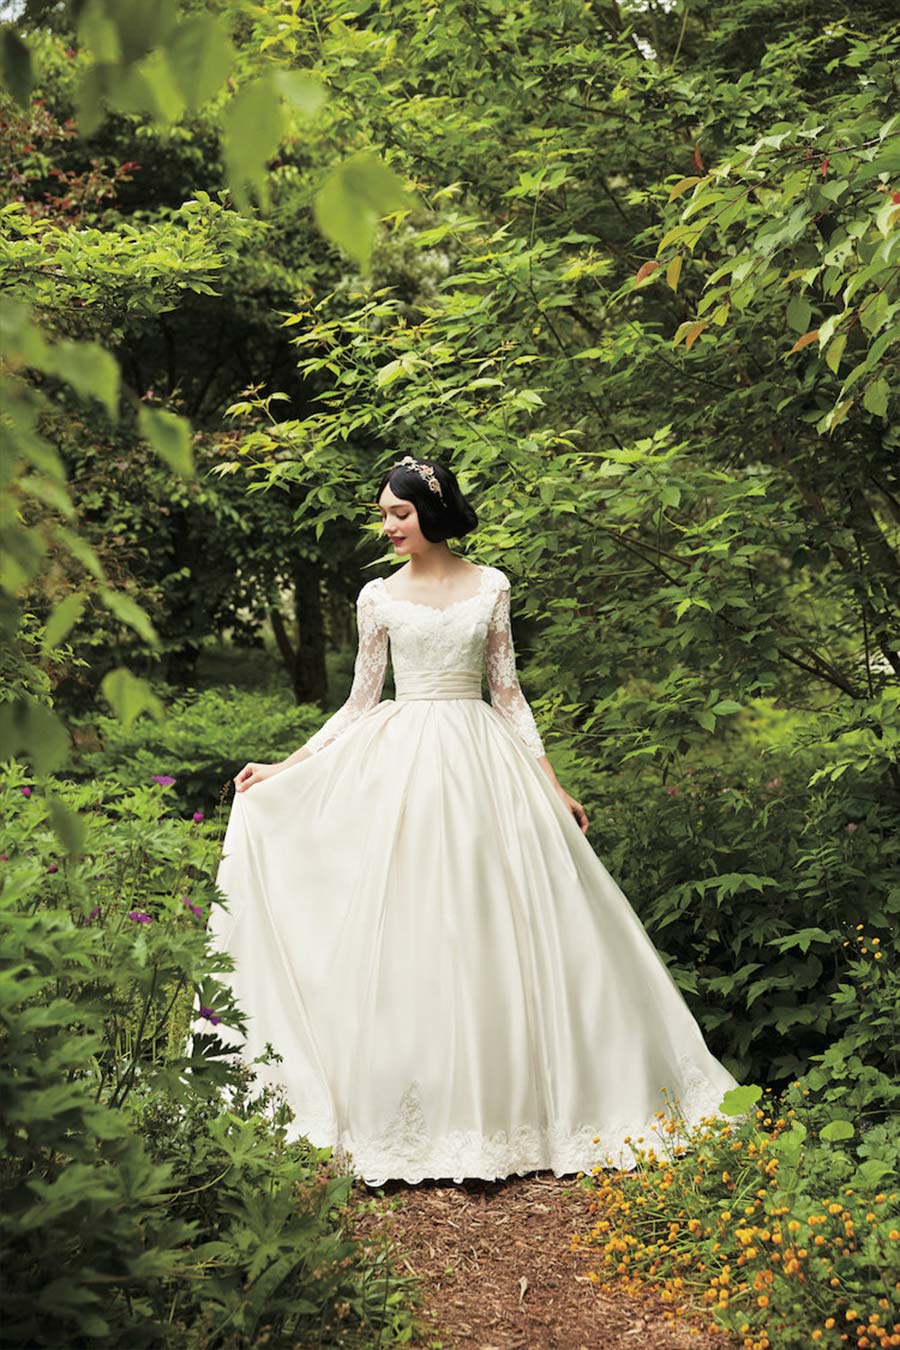 Vestido de noiva Disney: peças inspiradas em cada princesa